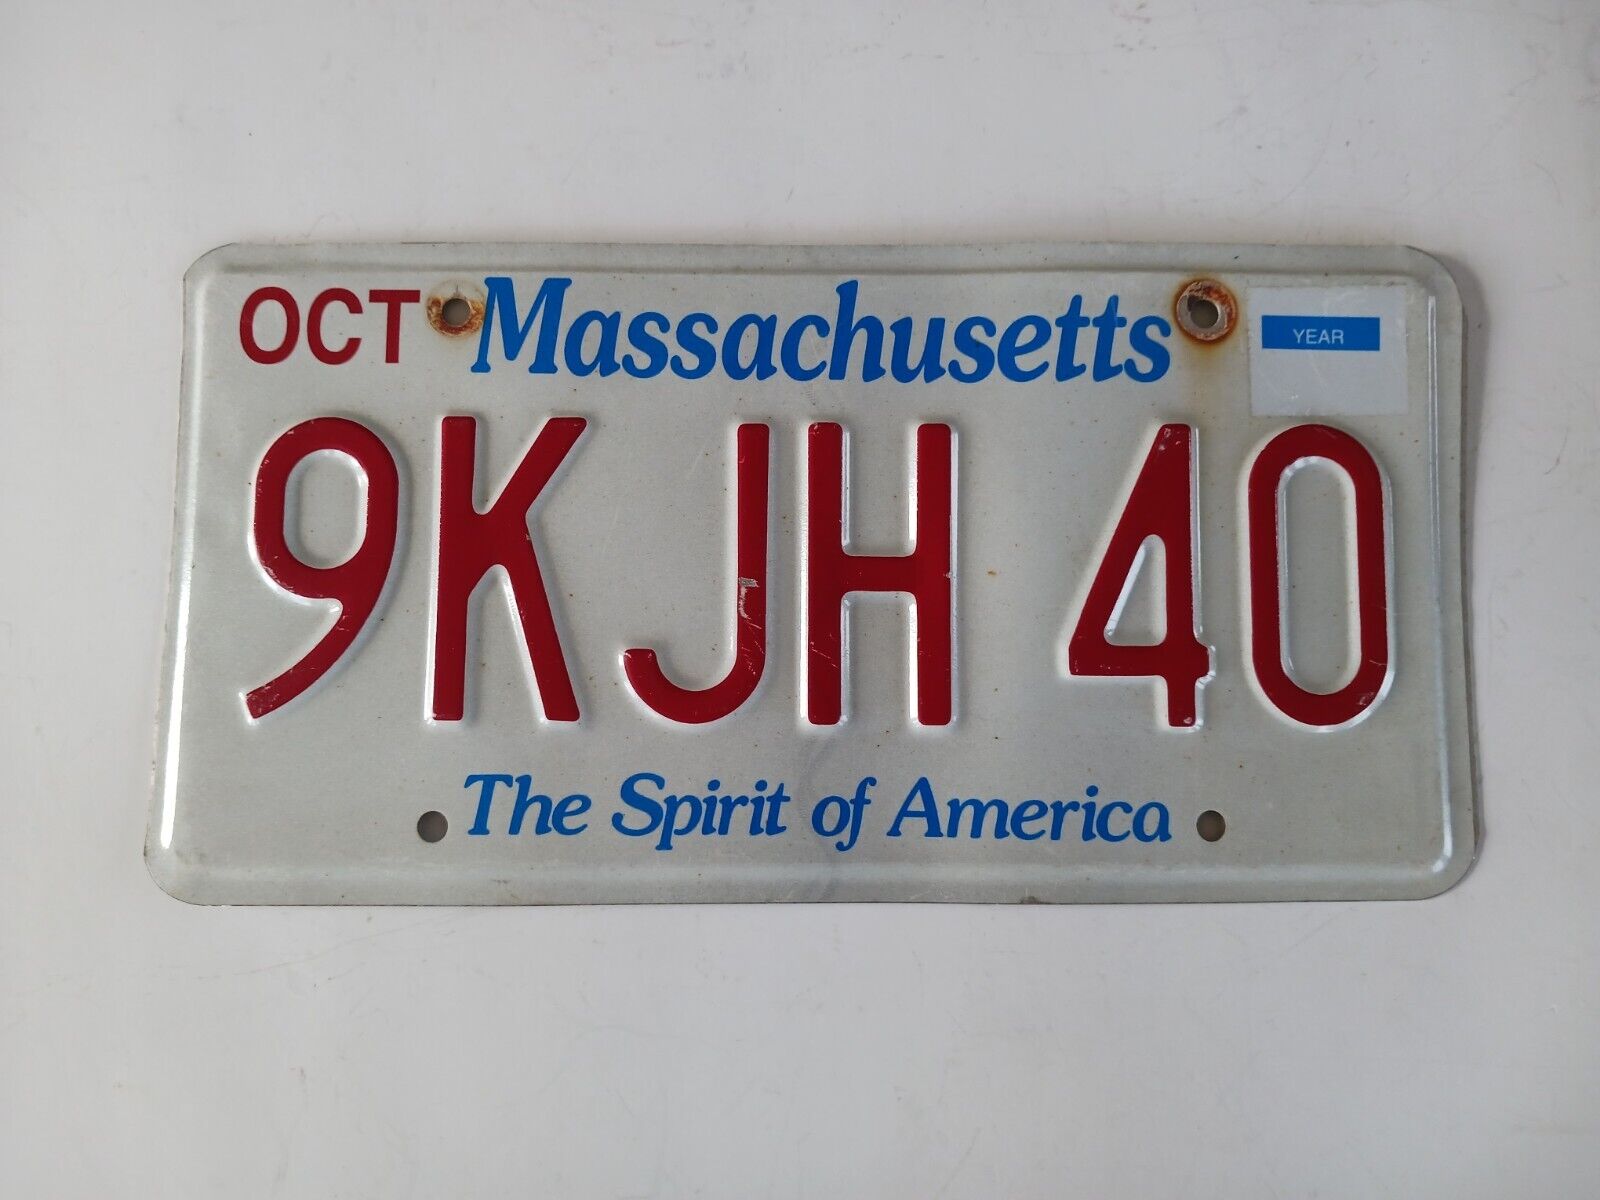 2010 Massachusetts License Plate 9KJH 40 The Spirit of America 